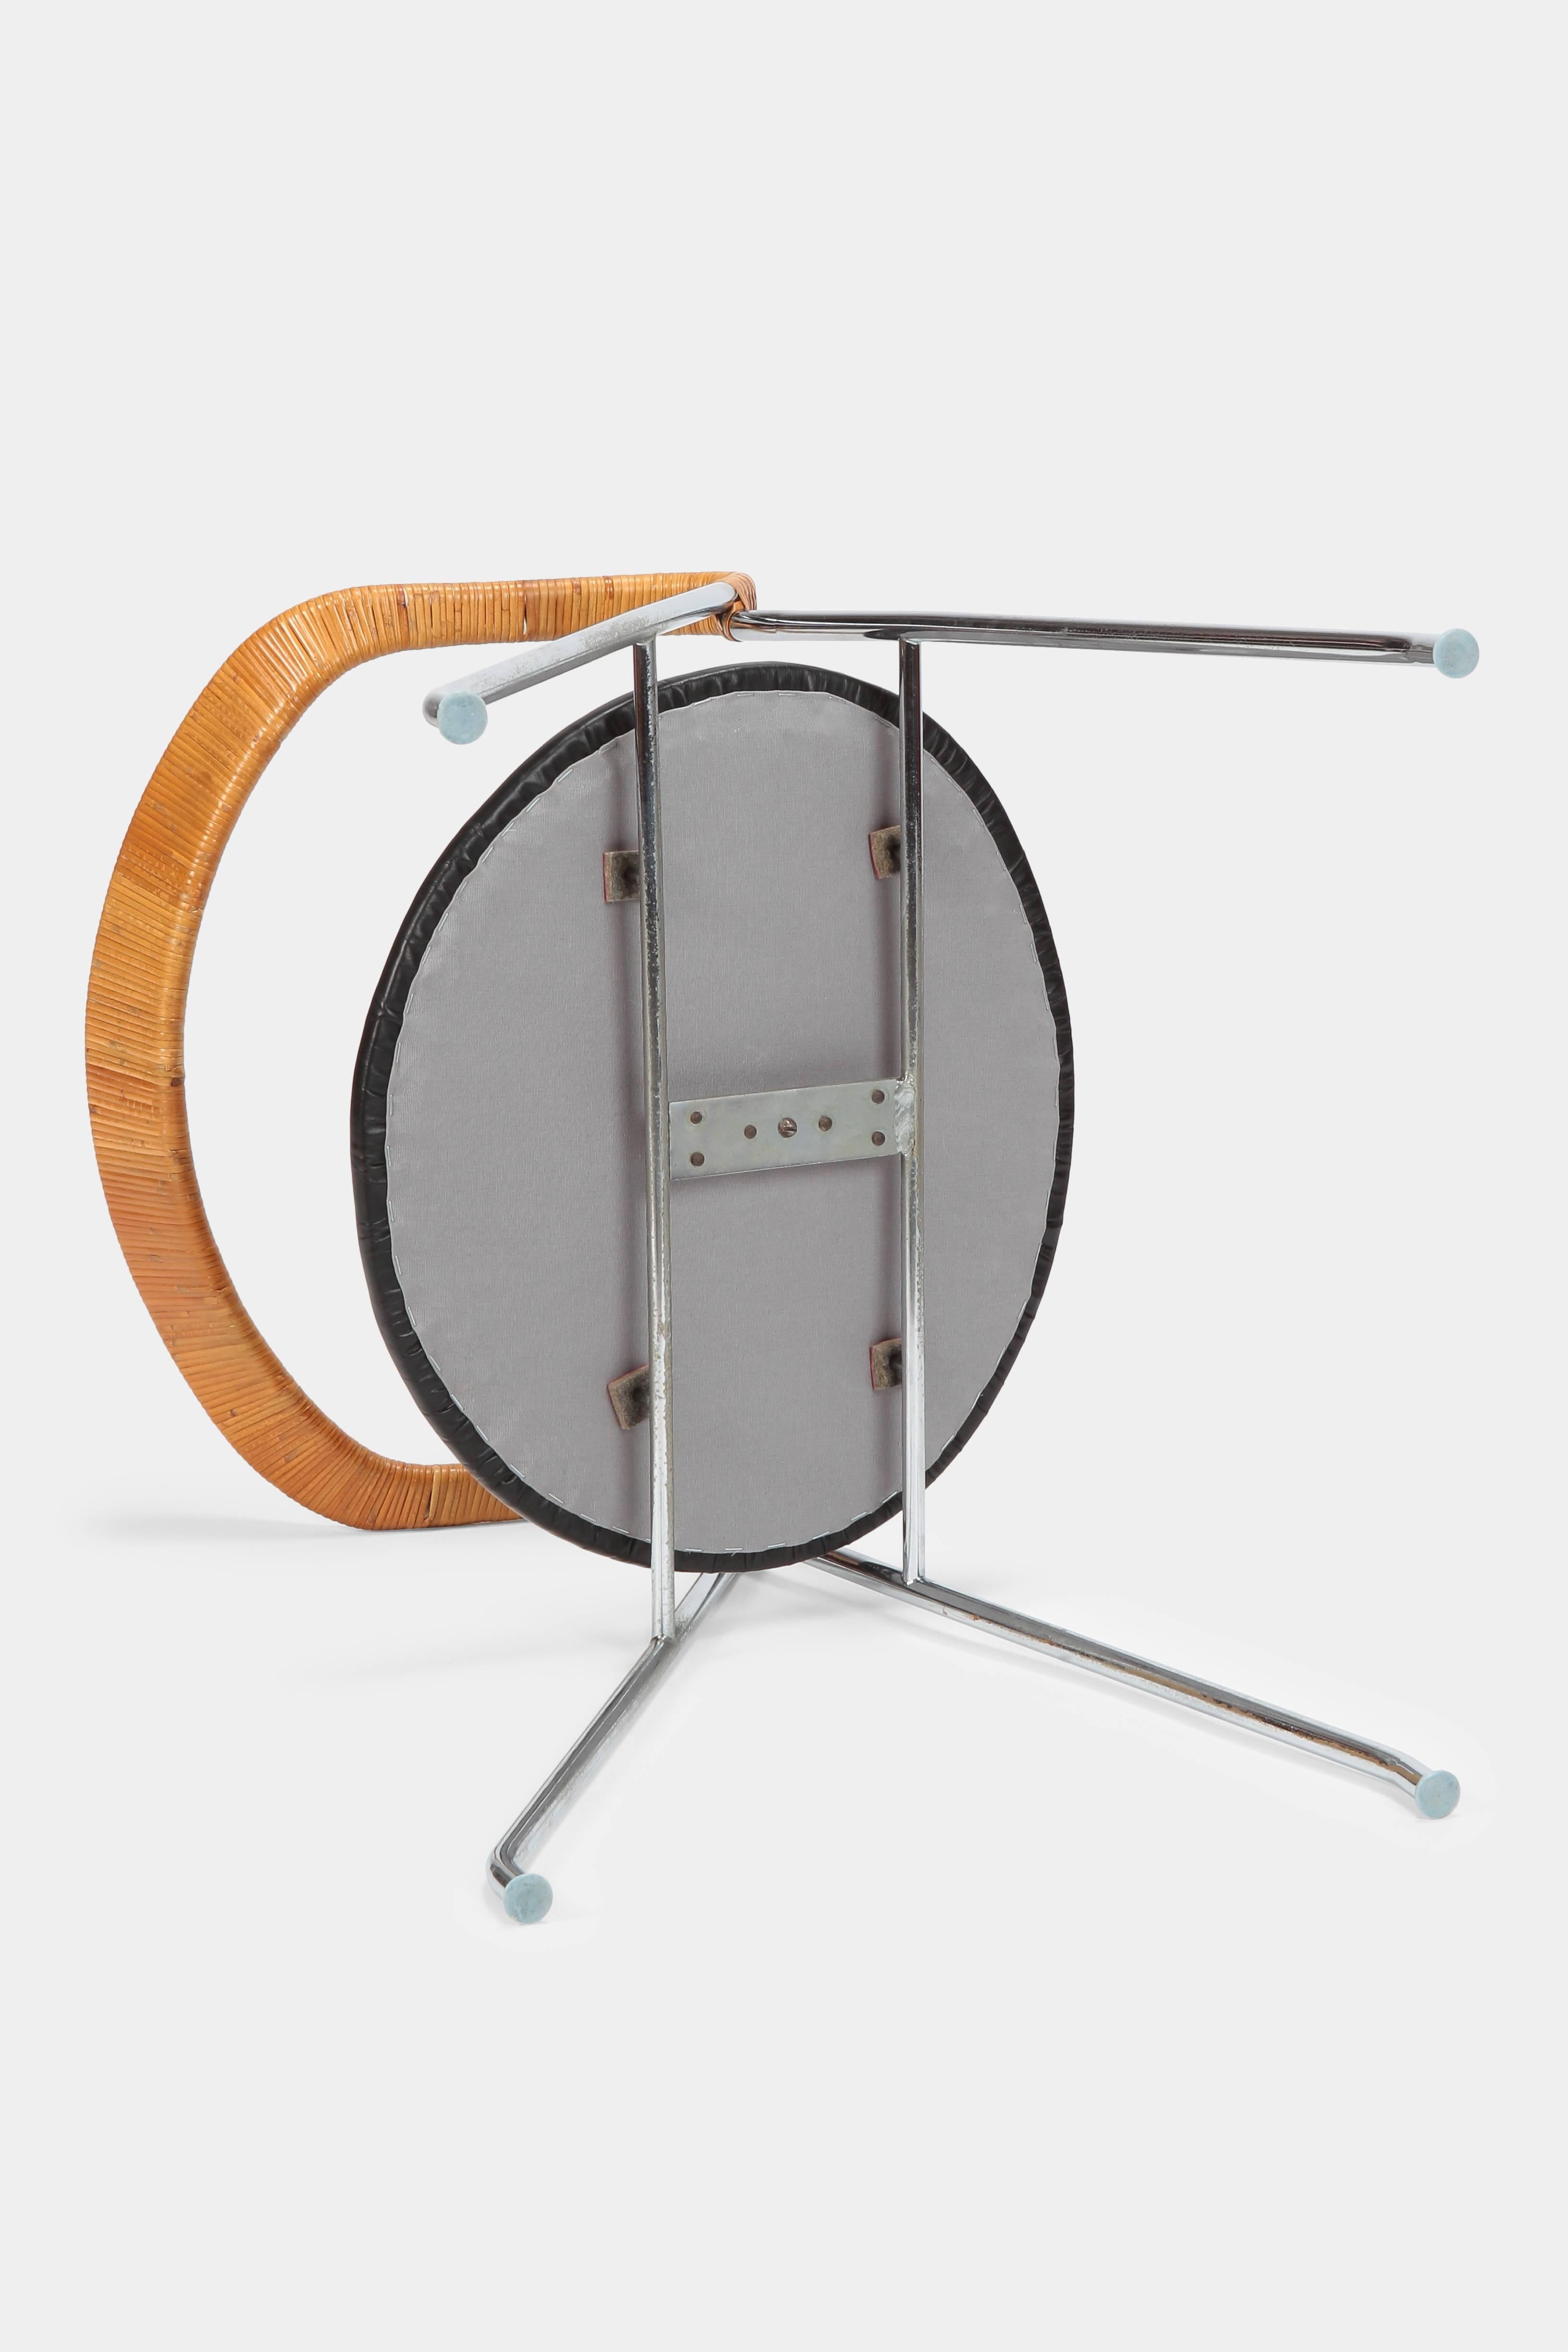 Hans Eichenberger “Saffa” HE103 Chair Dietiker, 1950s For Sale 2